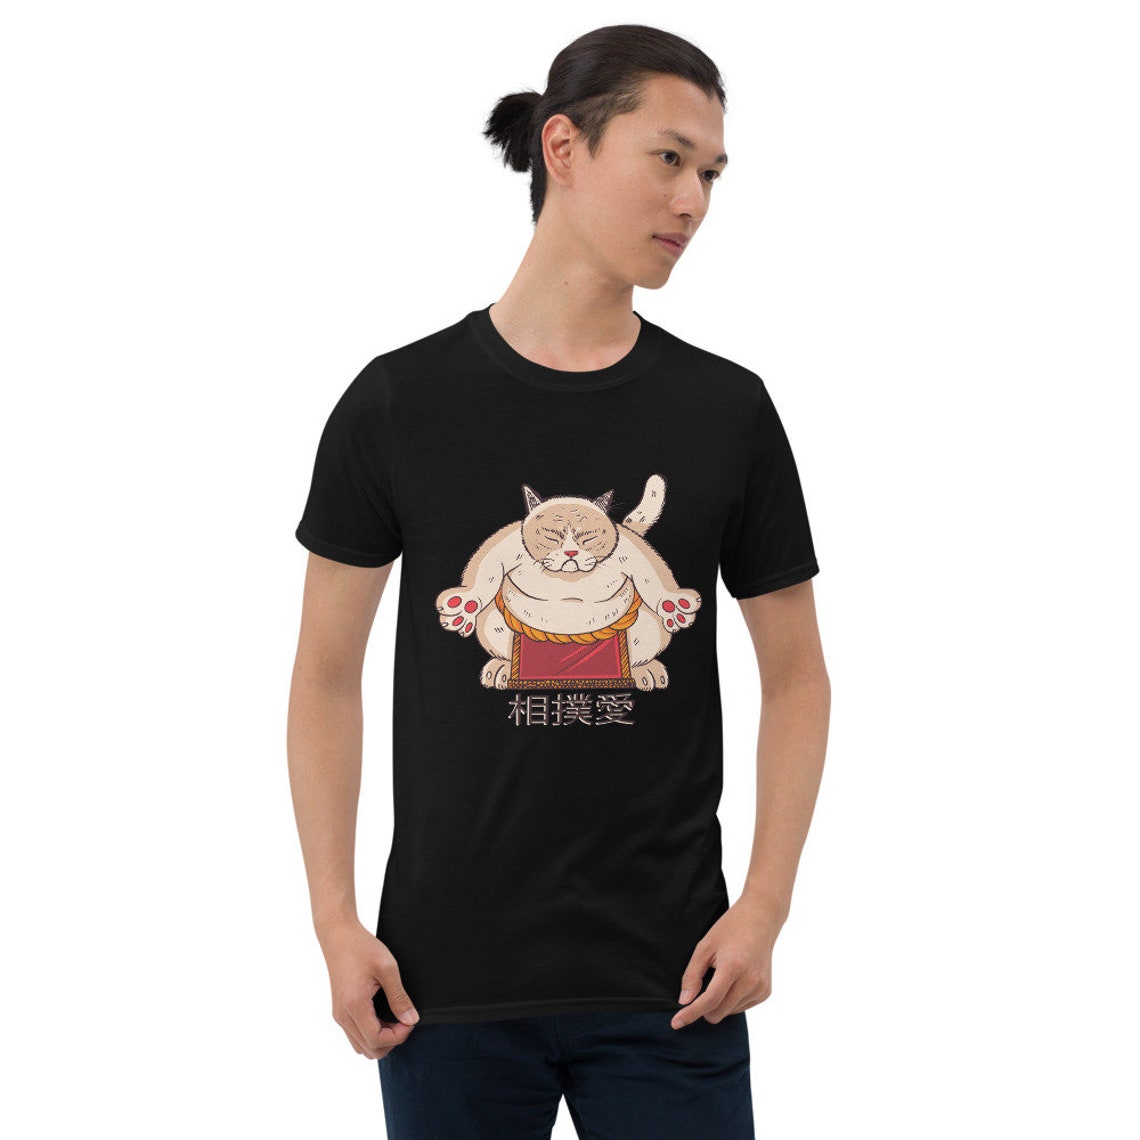 Sumo Cat T-Shirt Funny Cat Shirt Funny Martial Arts T Shirt | Etsy